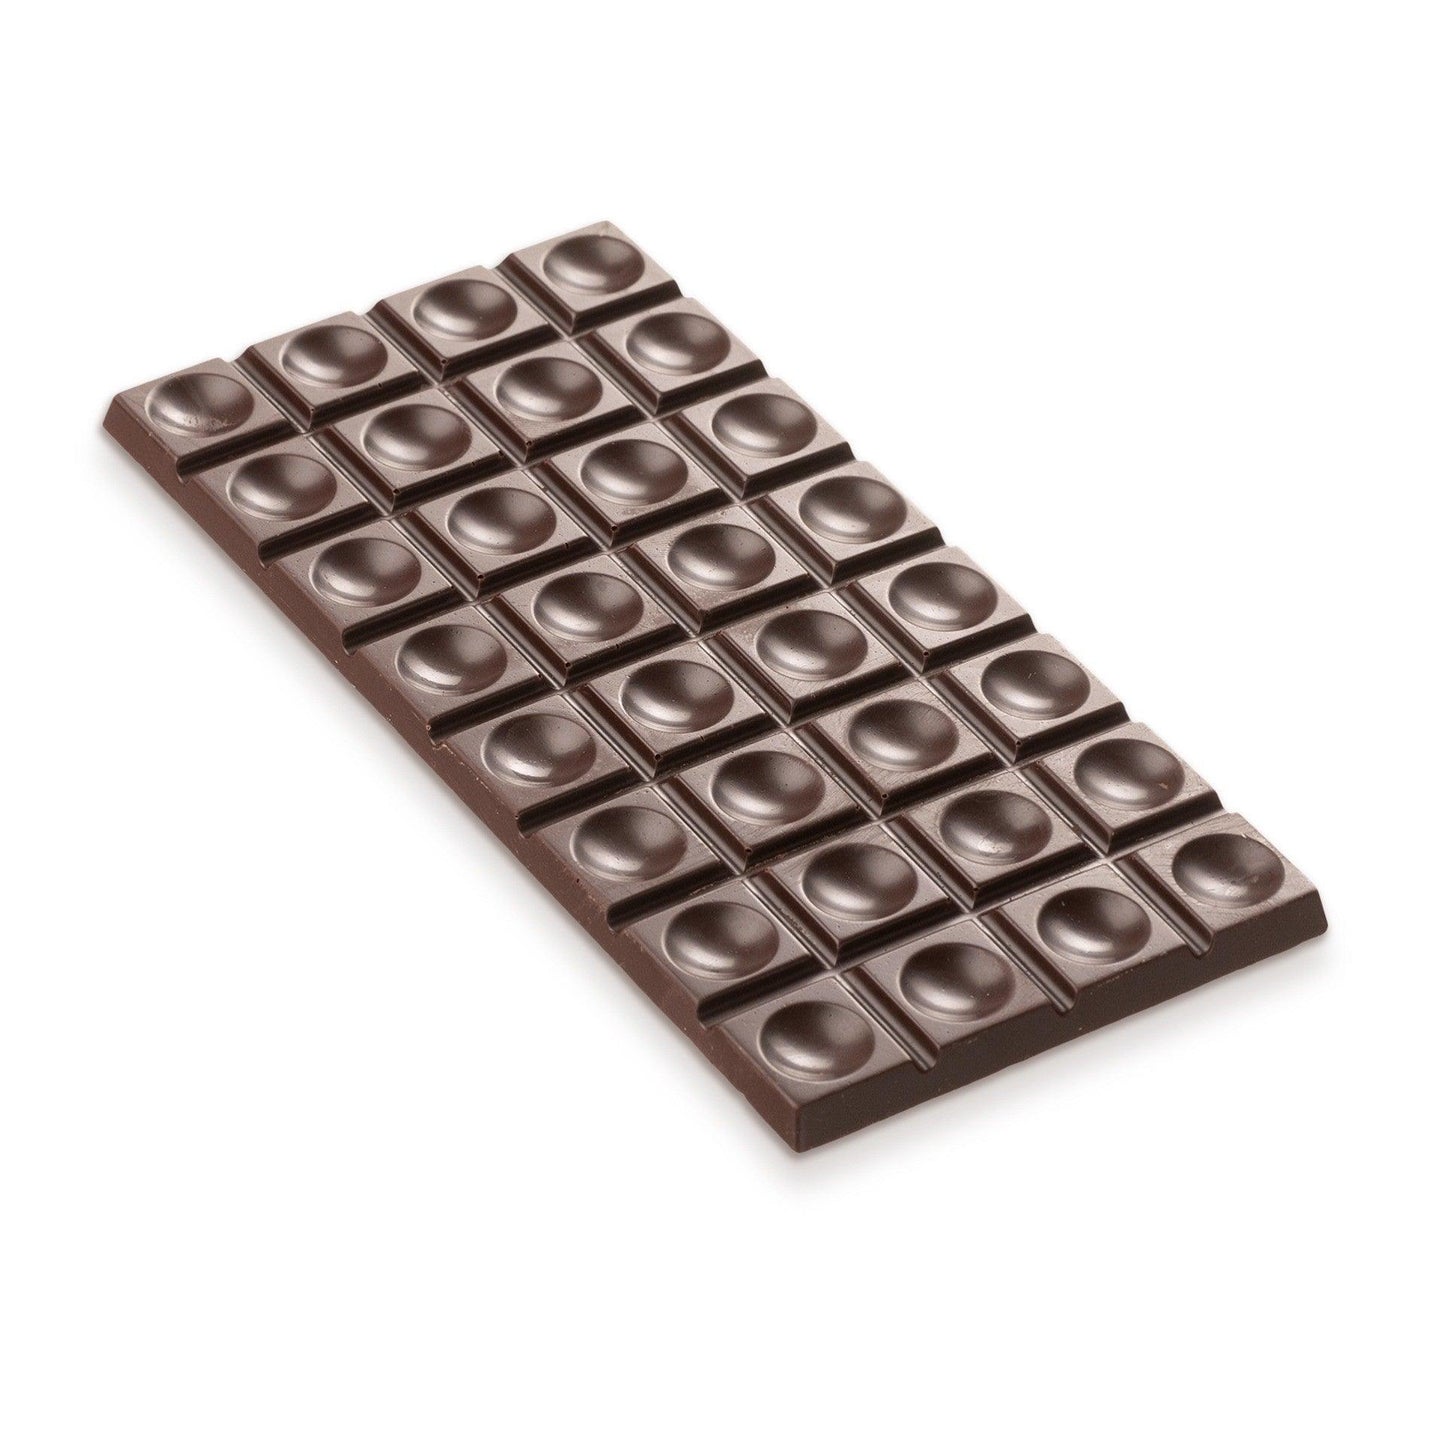 Zuckerfreie Dattel-Bitterschokolade mit 85% Kakaoanteil, 70 Gramm Tafel. Intensiver Schokoladengenuss aus hochwertigen Zutaten, ohne Zuckerzusatz.